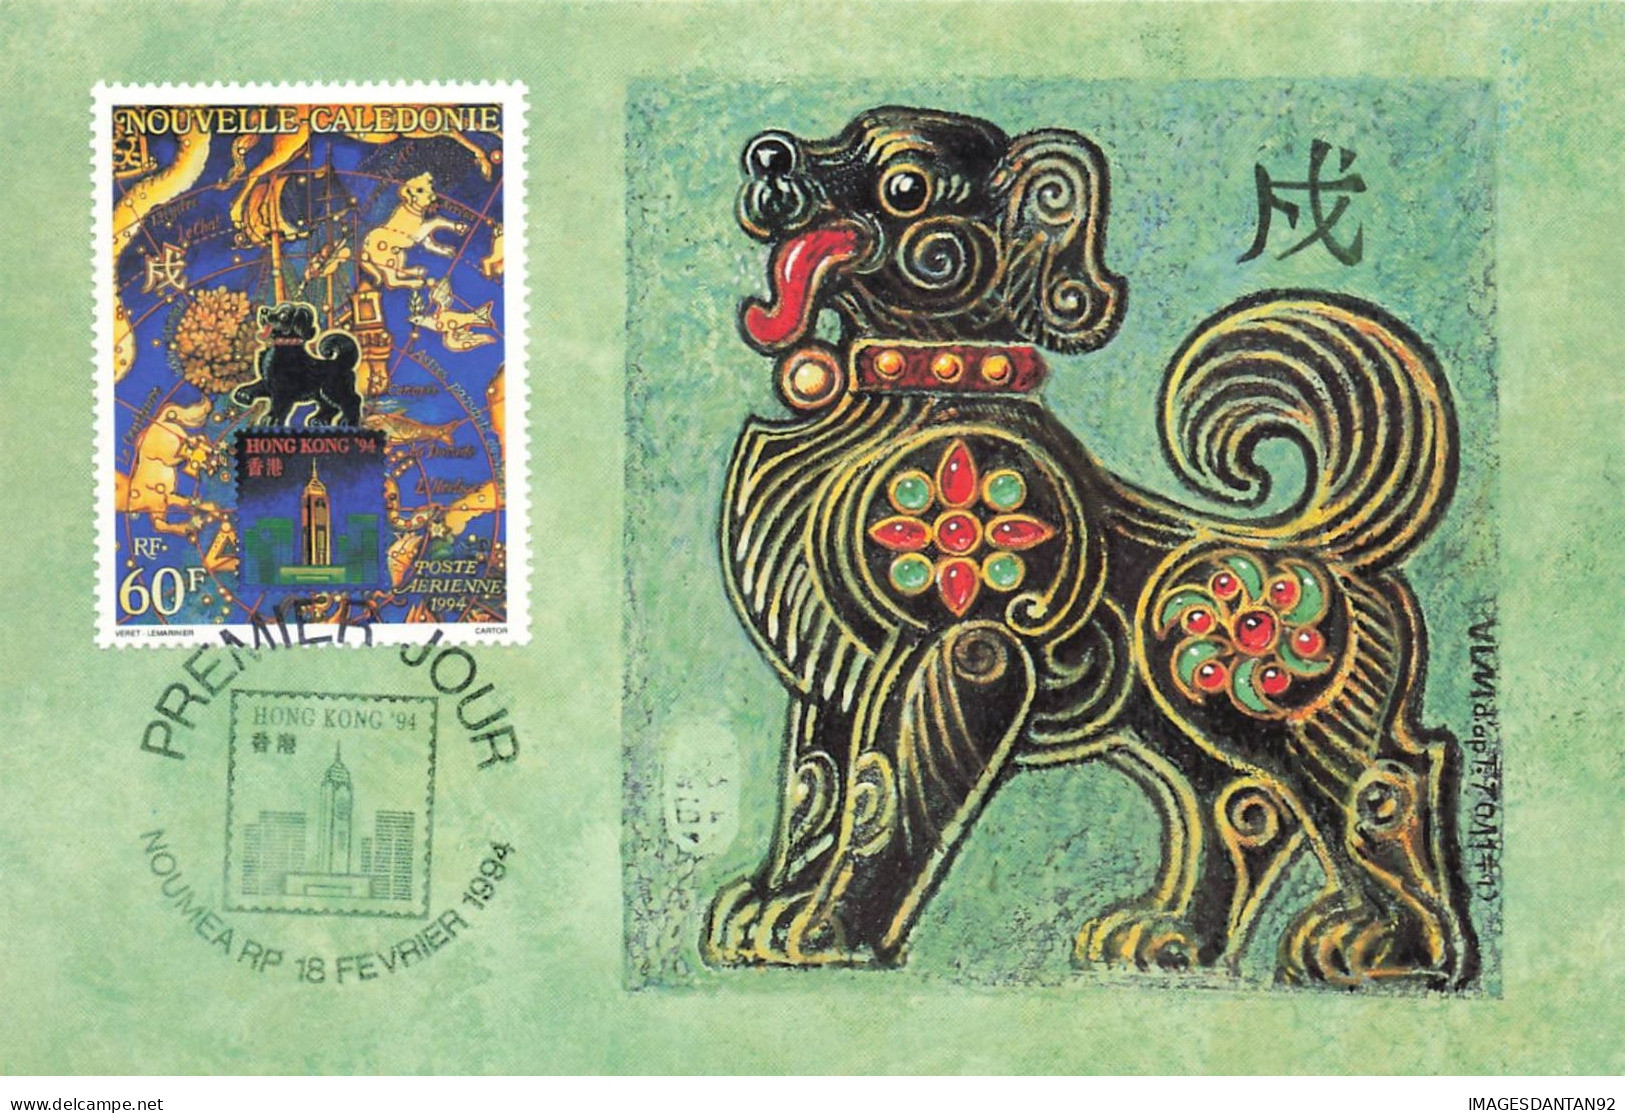 CARTE MAXIMUM #23503 NOUVELLE CALEDONIE NOUMEA 1994 HONGKONG HONG KONG - Cartoline Maximum